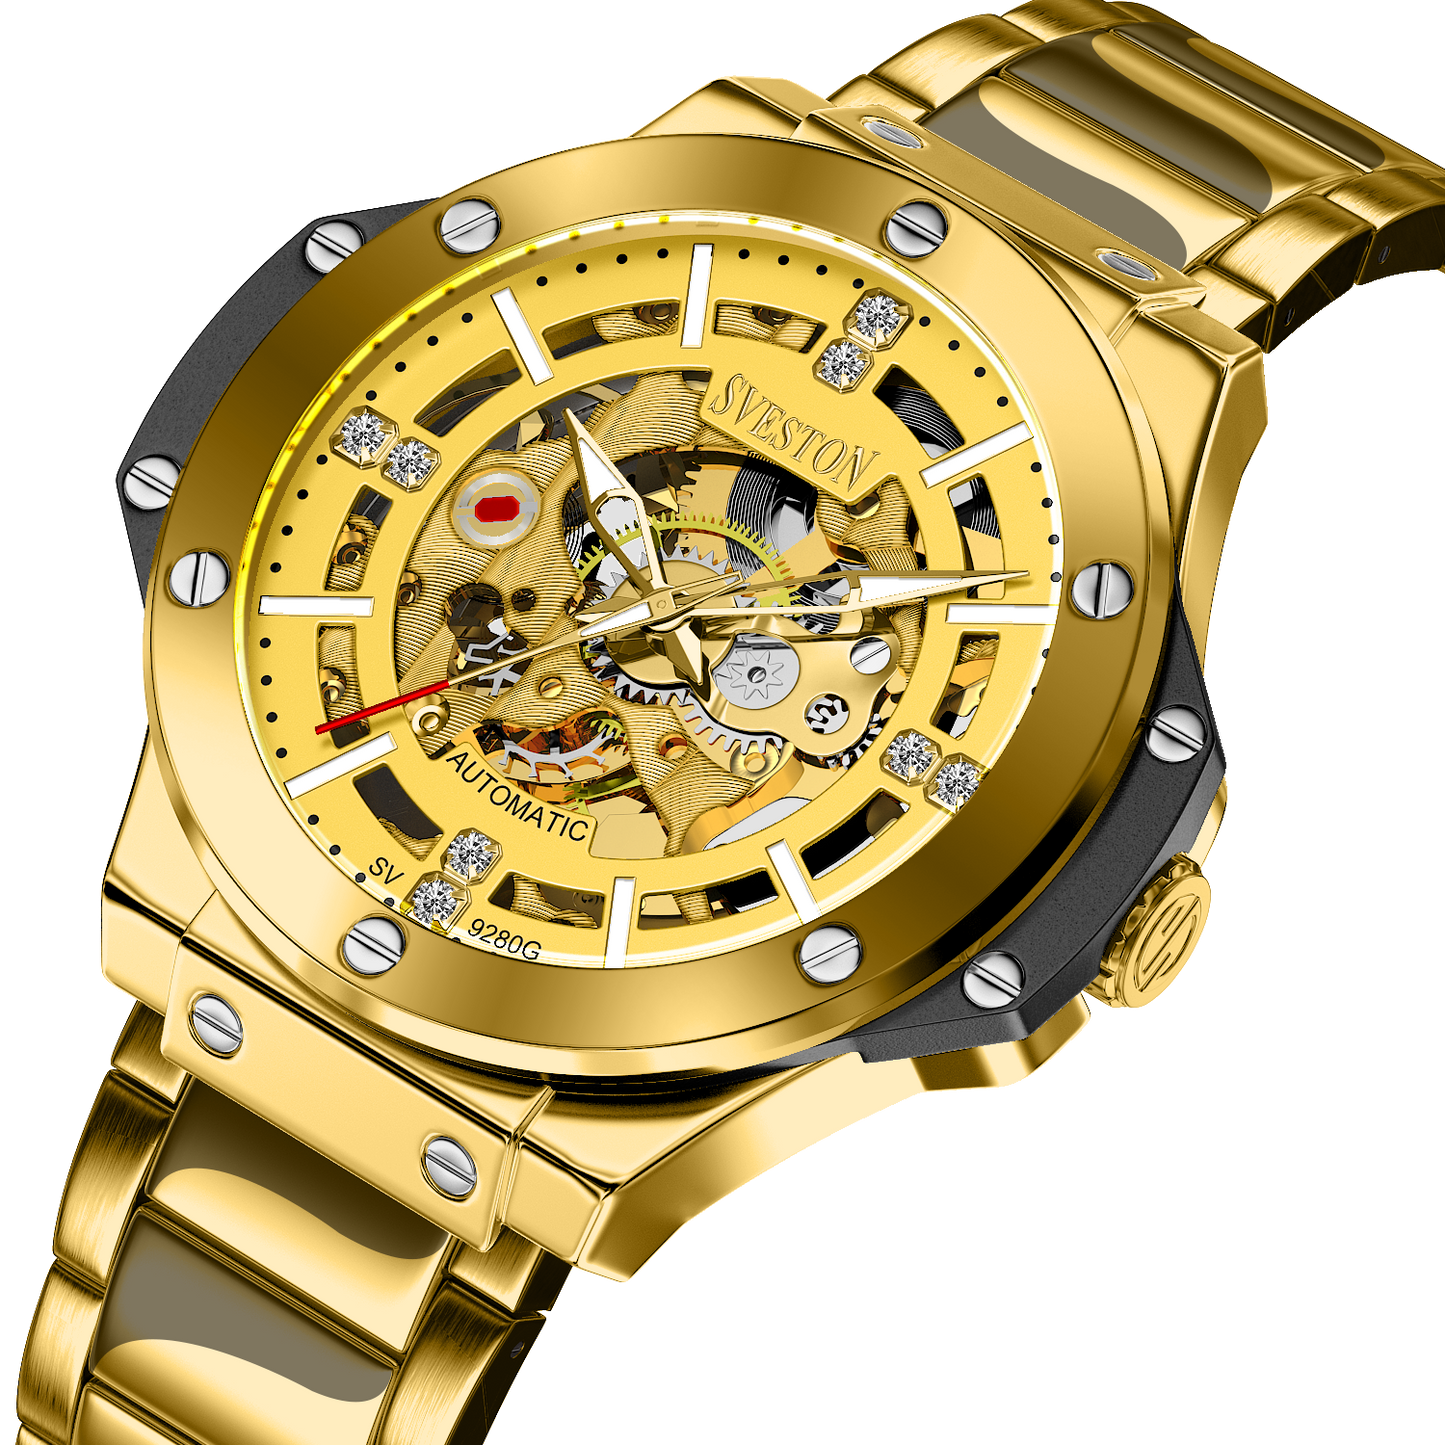 SVESTON El Dorado Automatic Watch